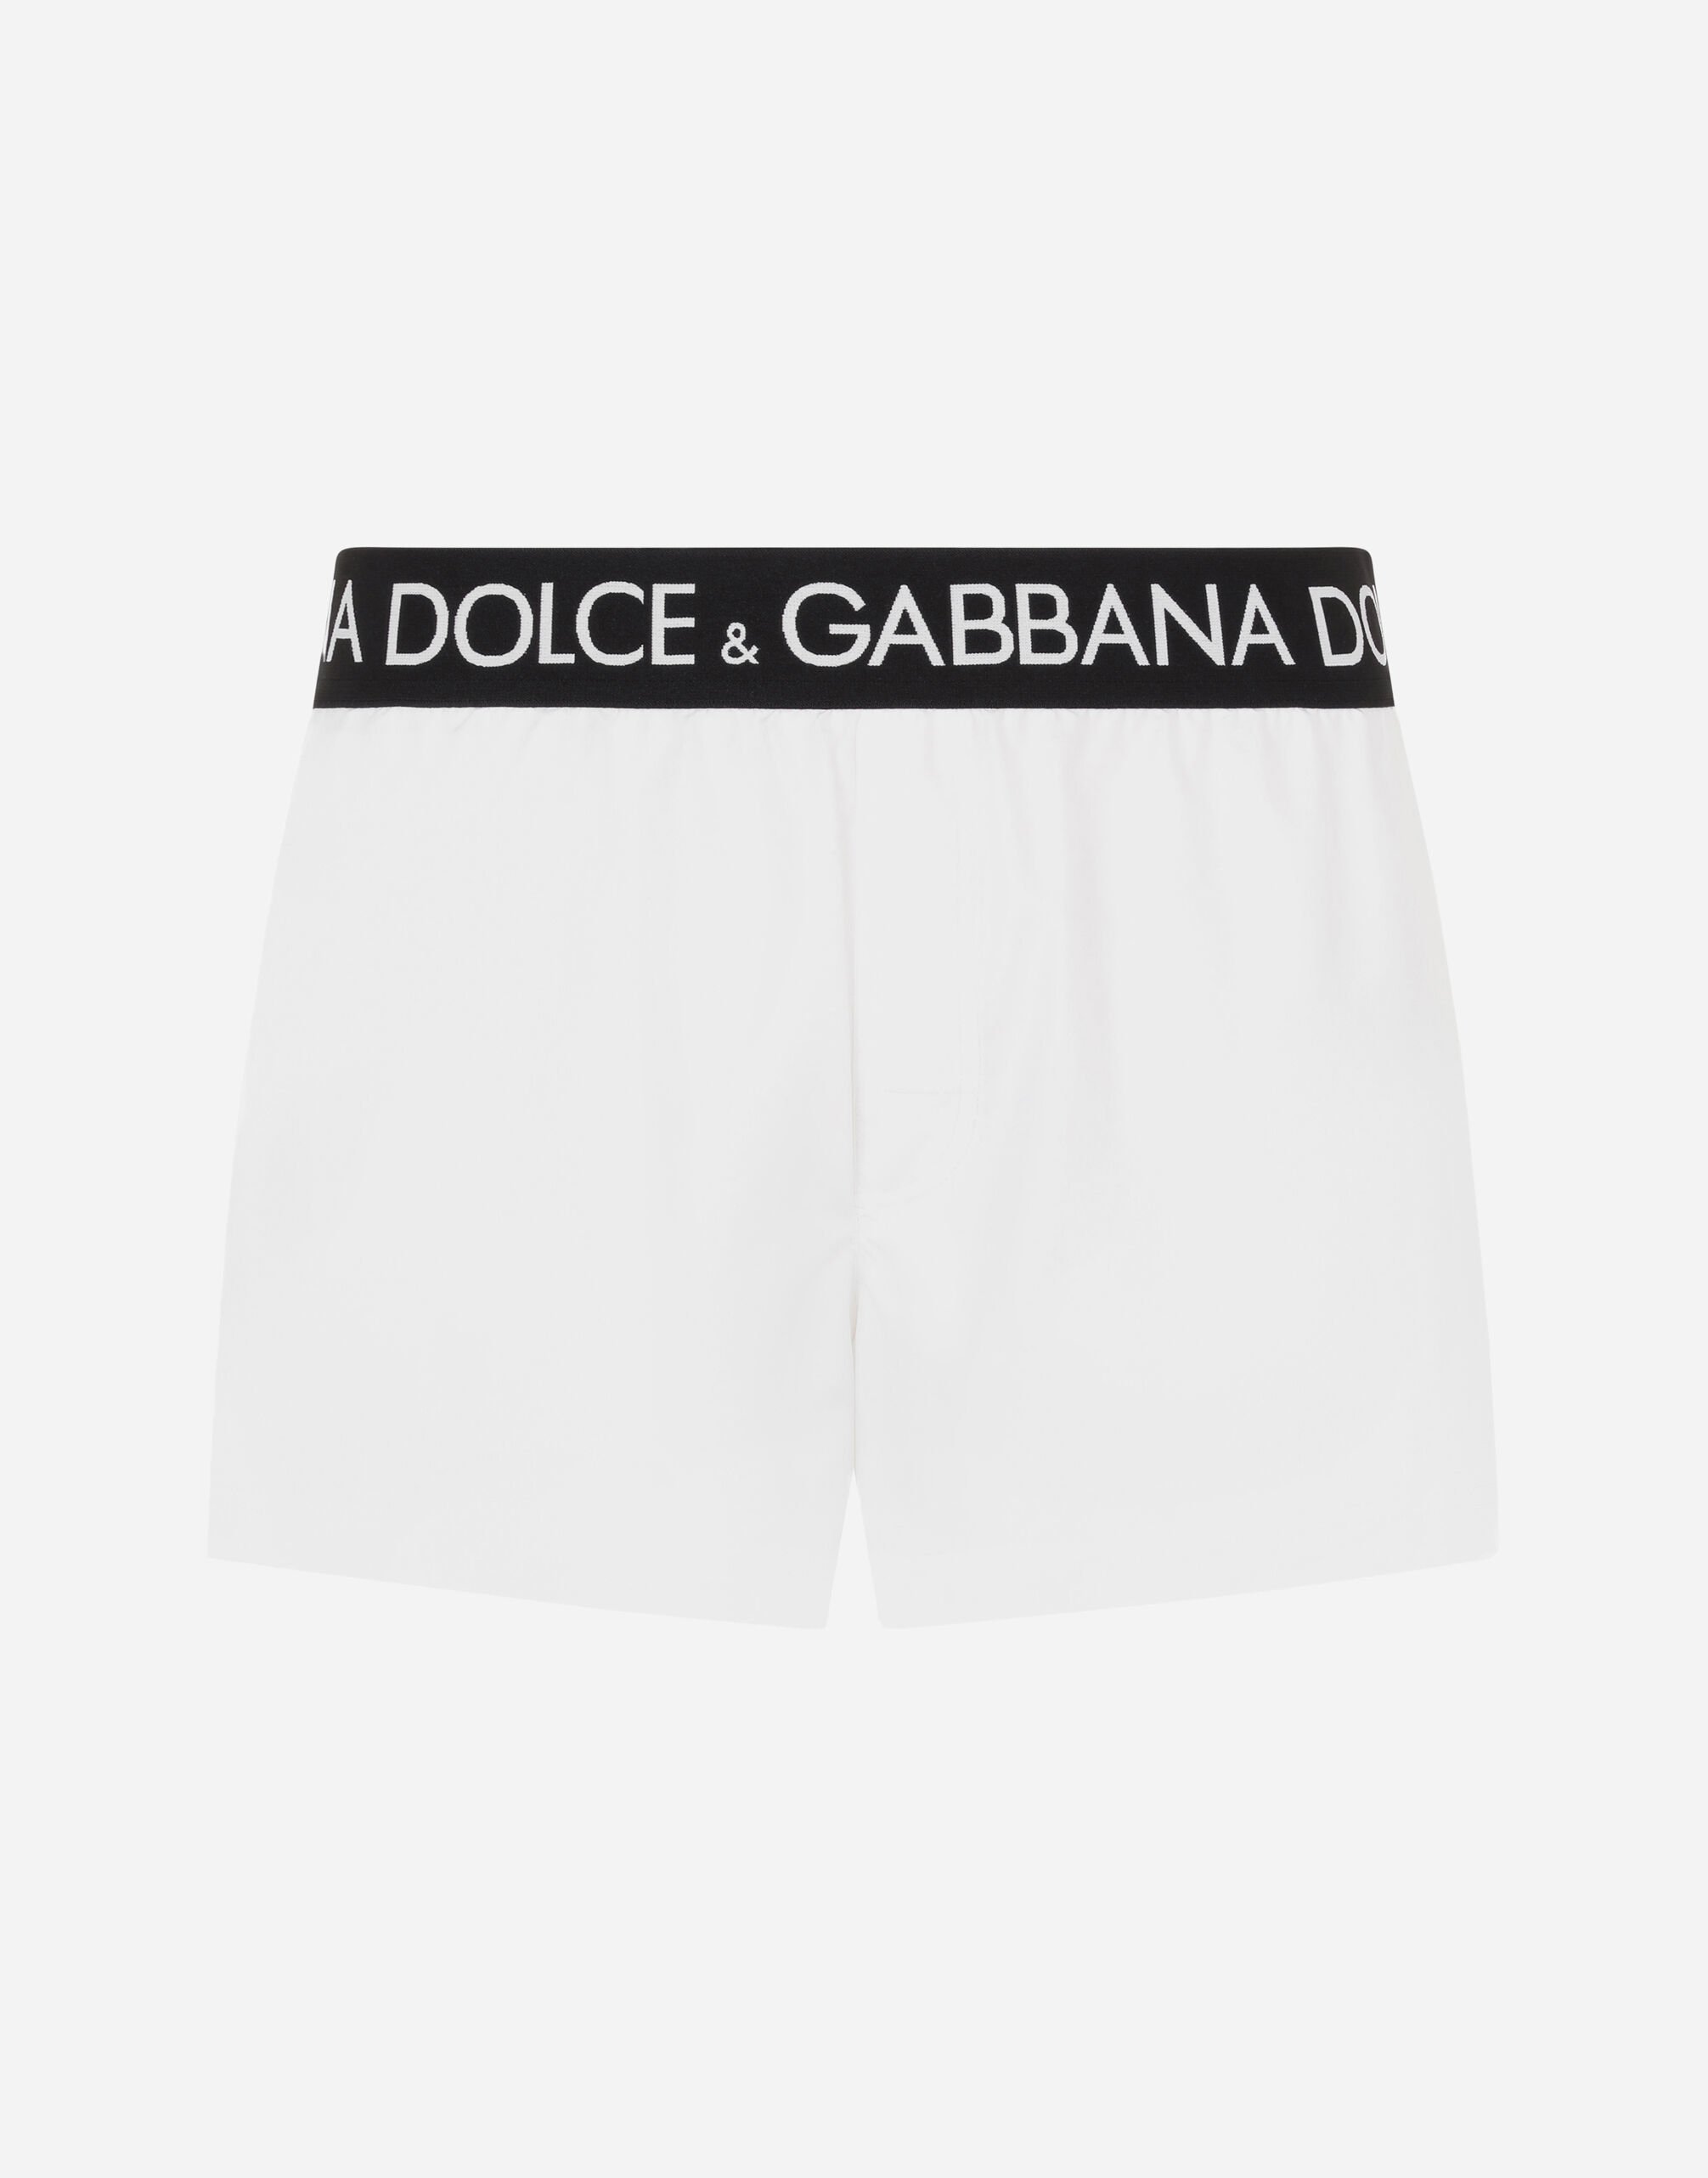 Dolce&Gabbana 로고 스트레치 허리 밴드 쇼트 트렁크 수영복 블랙 GY6IETFUFJR